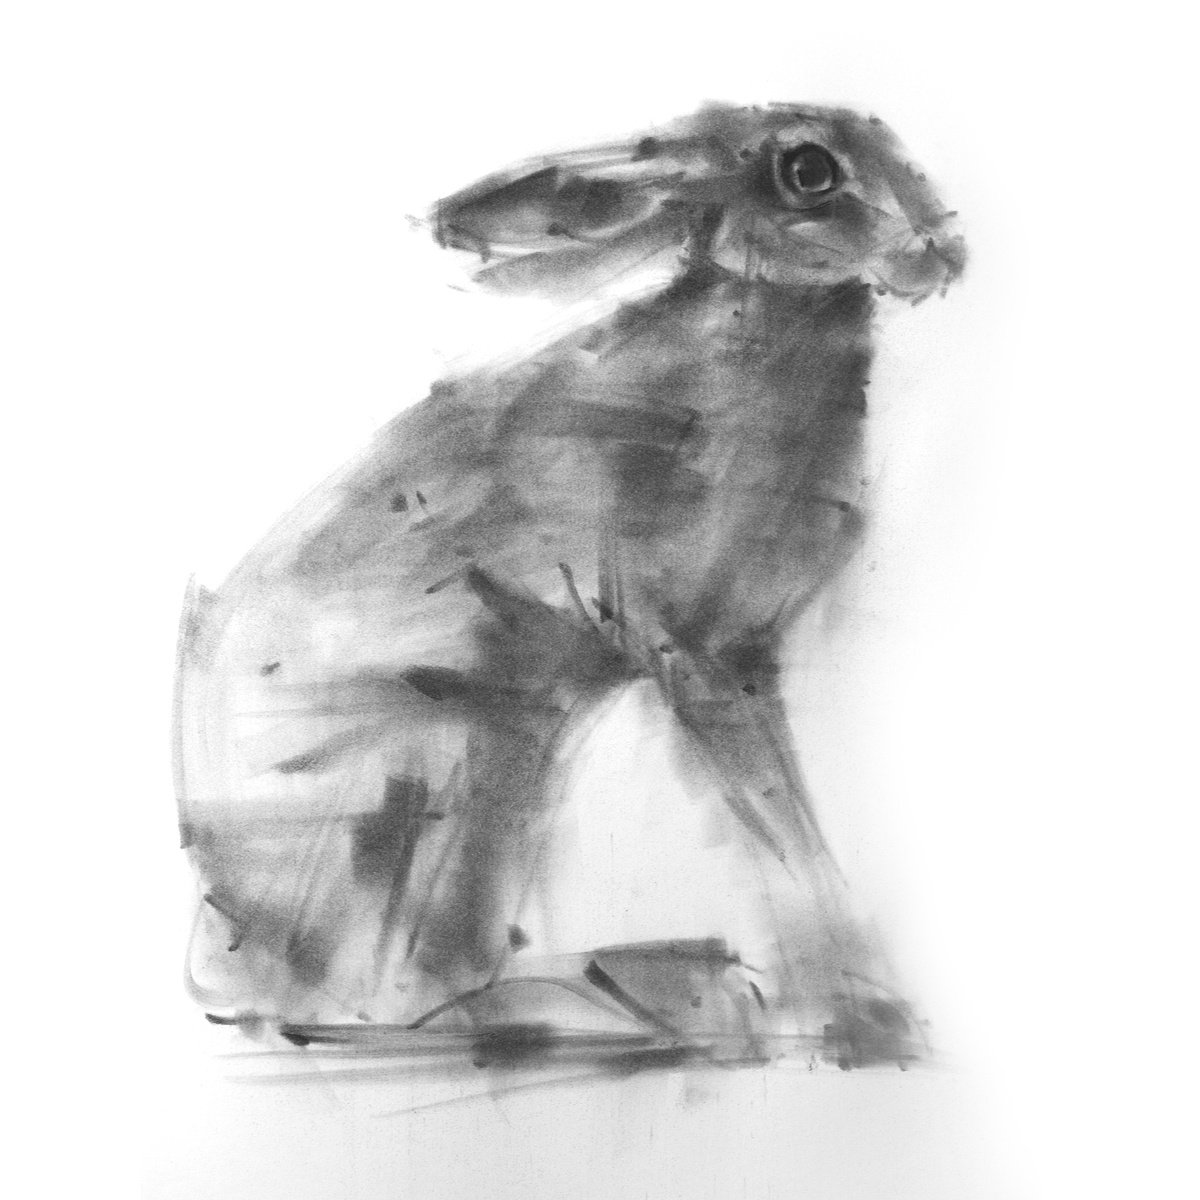 Hare No 3 by Tianyin Wang